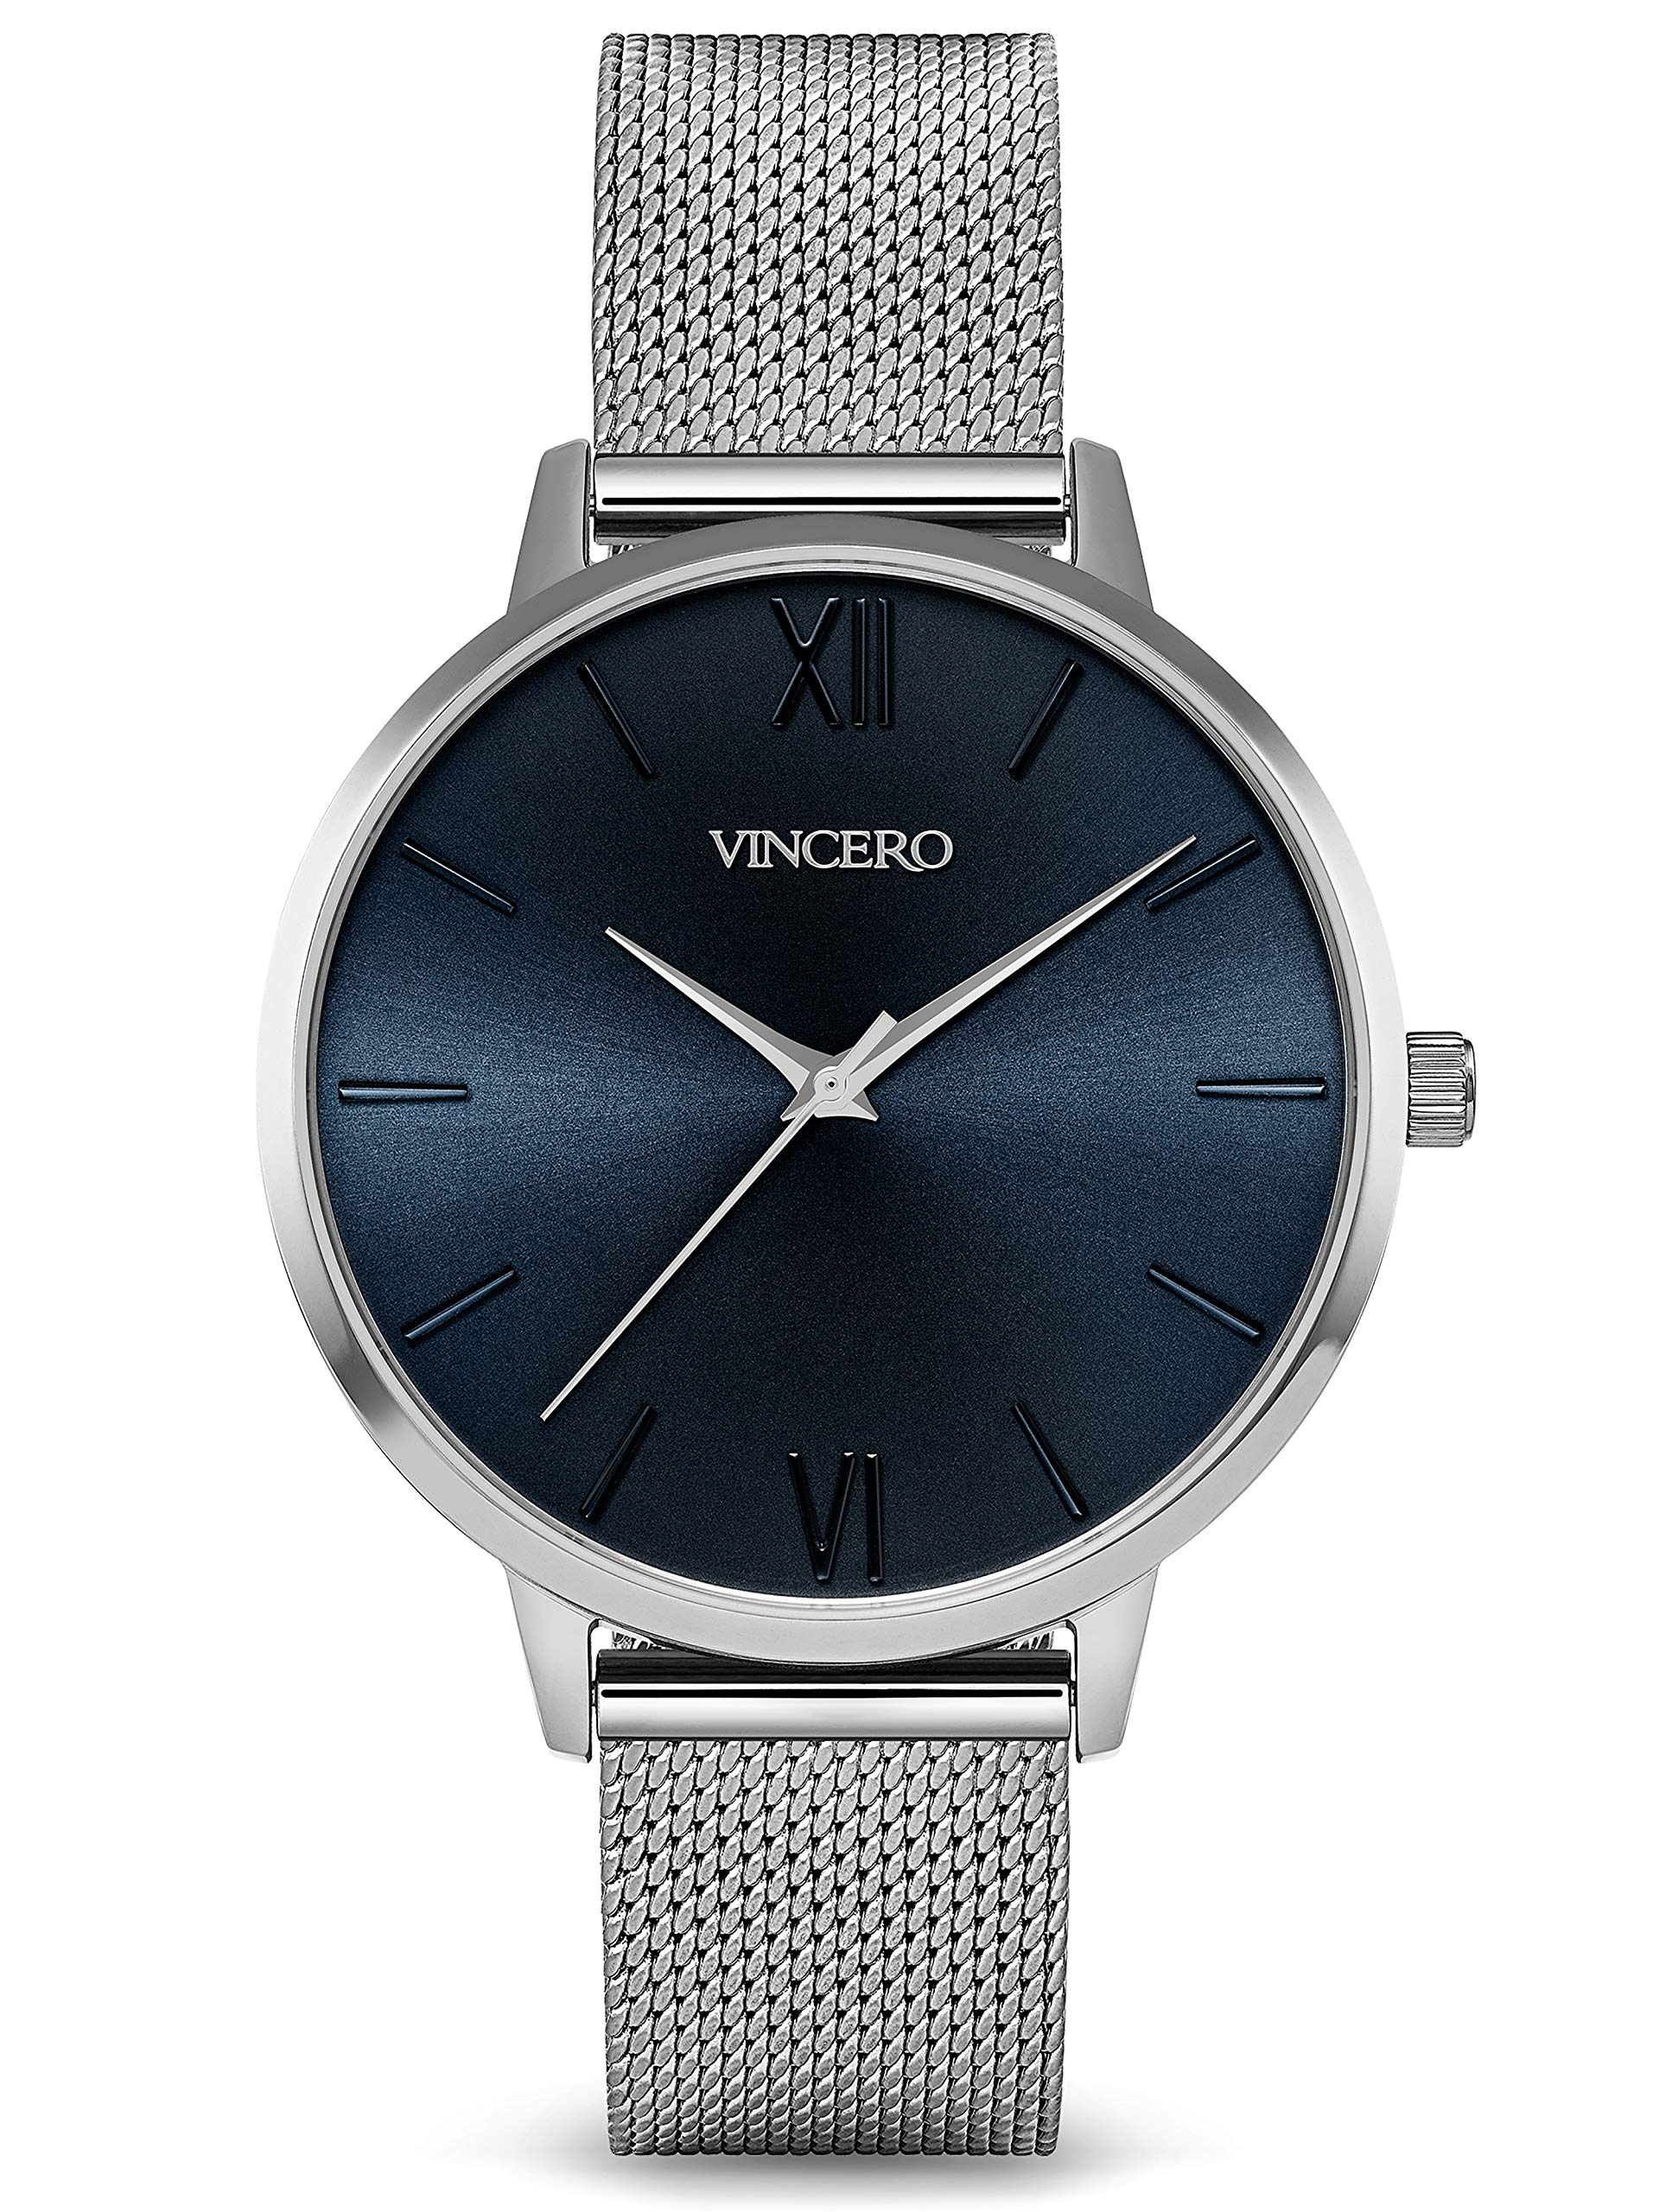 Vincero ラグジュアリー レディース エロス 腕時計 - 日本製クォーツムーブメント メッシュシ